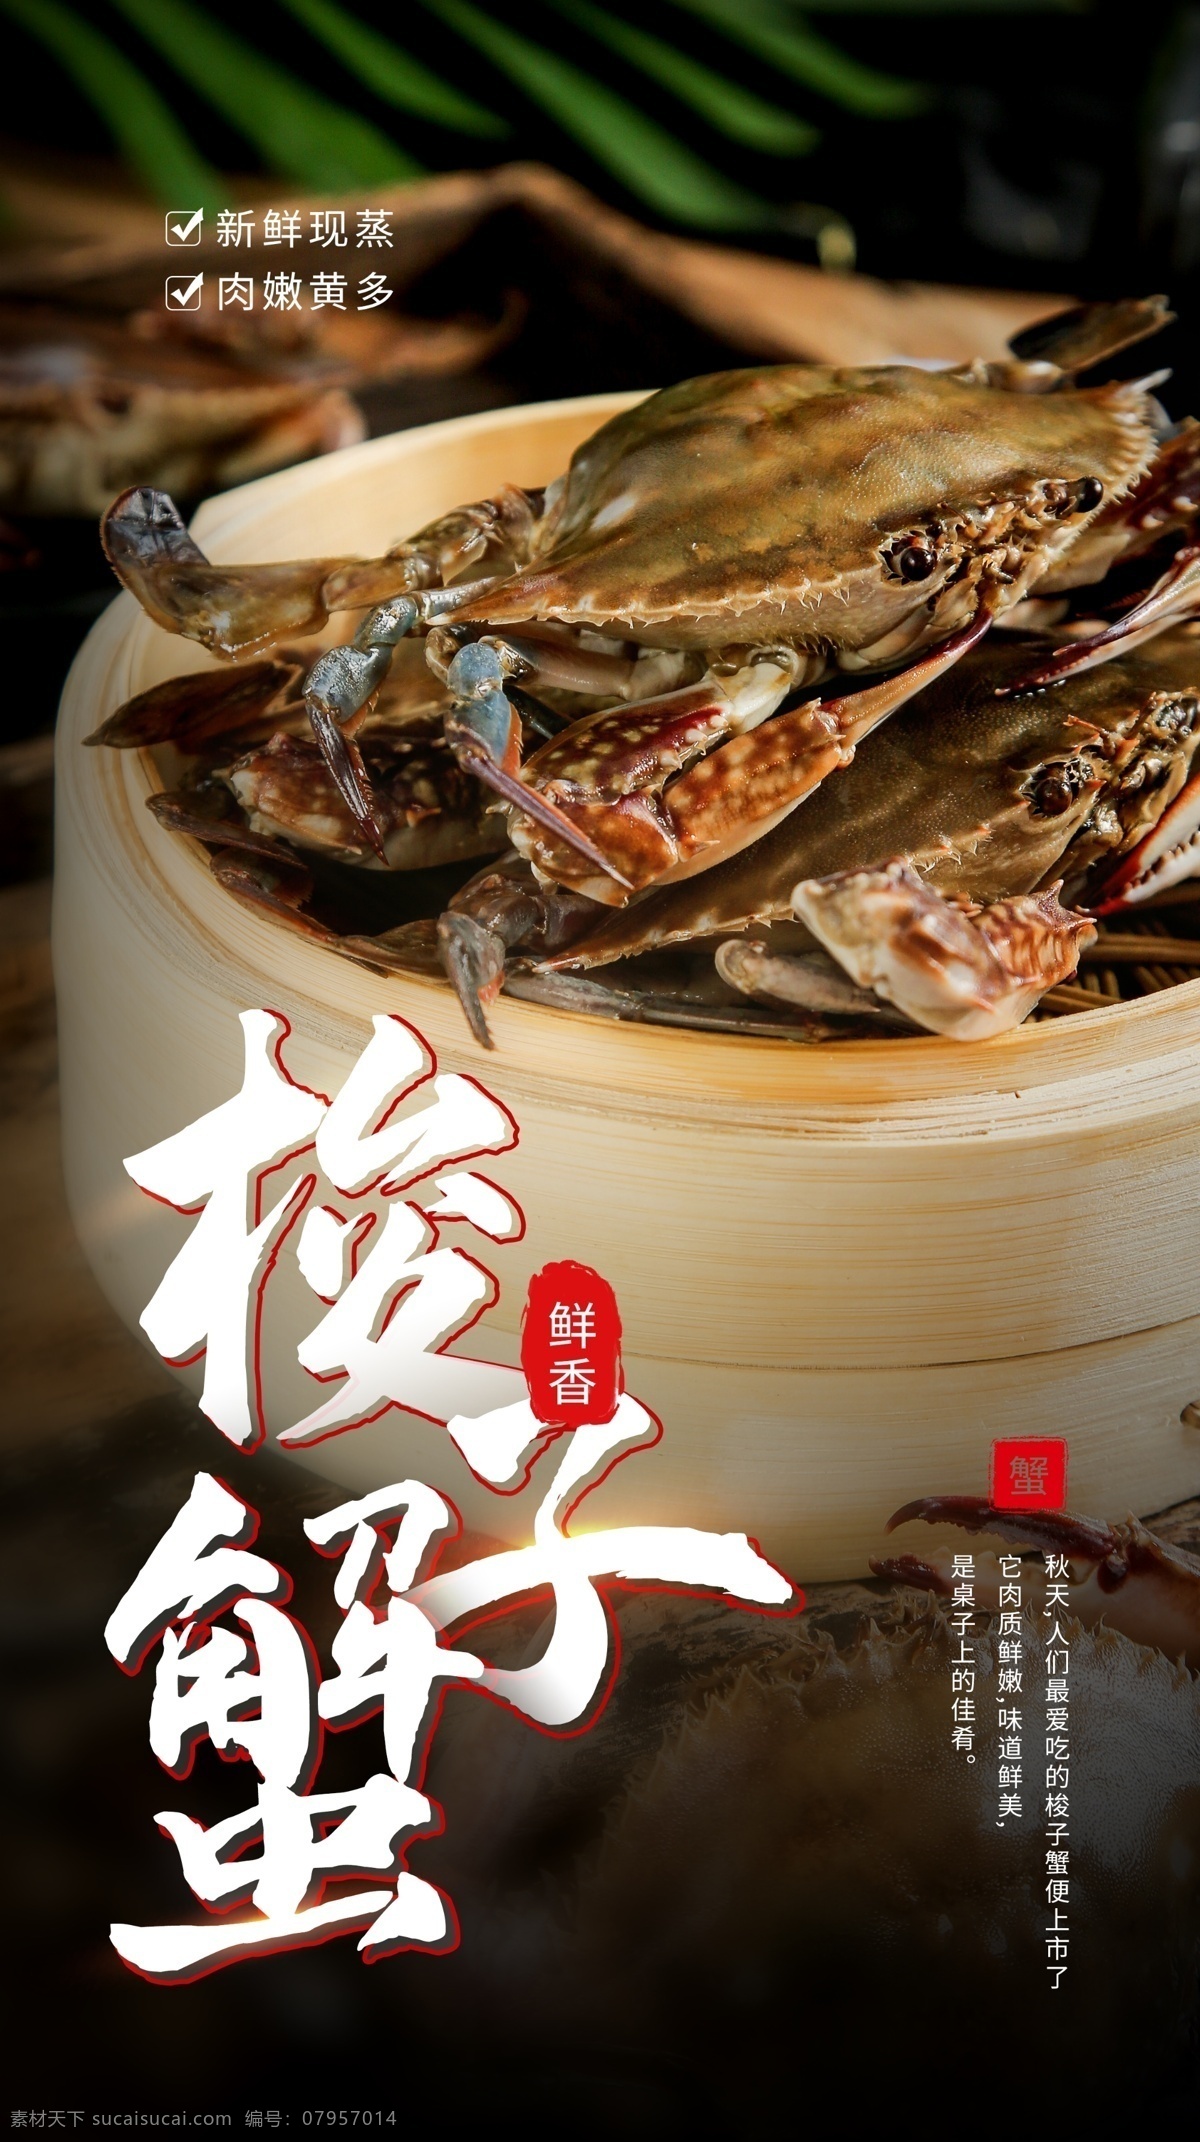 梭子蟹 美食 食 材 活动 海报 素材图片 食材 餐饮美食 类